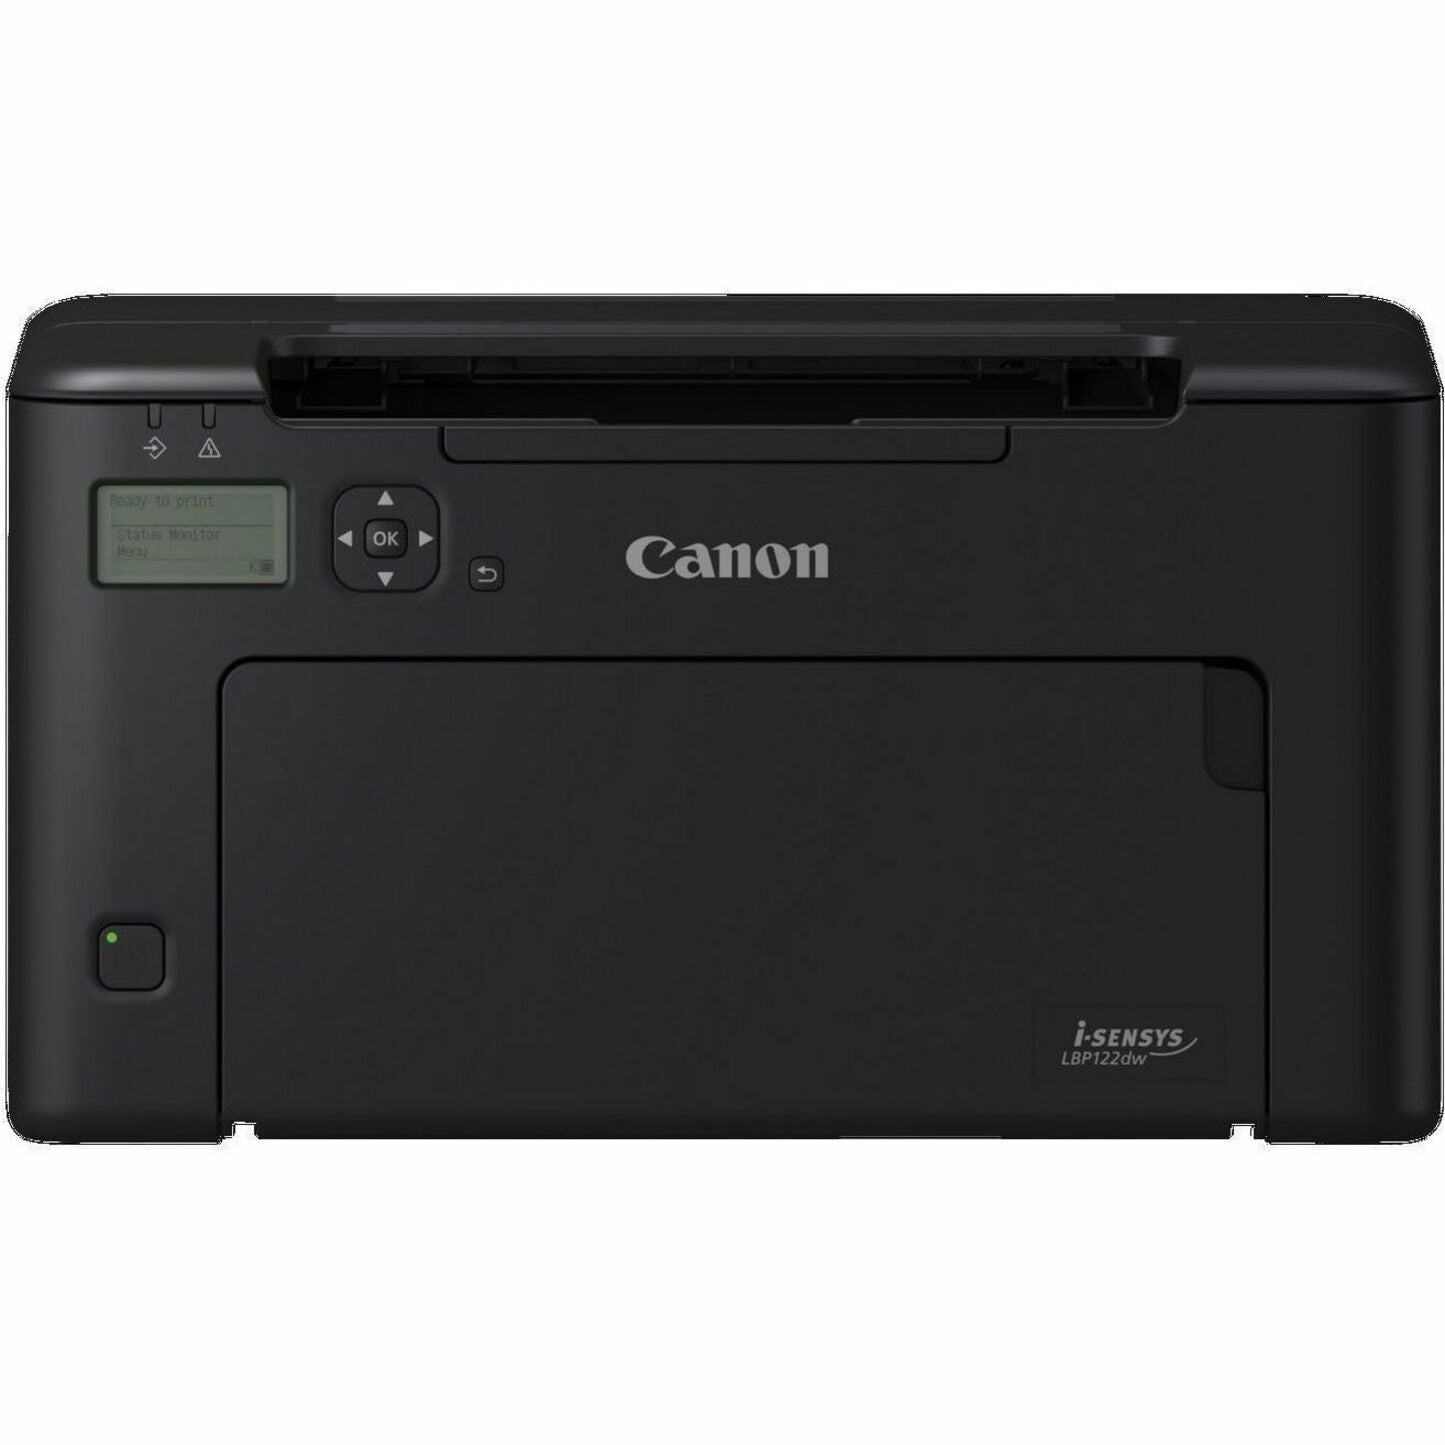 Canon 5620C006 imageCLASS LBP122dw Imprimante laser sans fil recto-verso monochrome 30 ppm 600 x 600 ppp